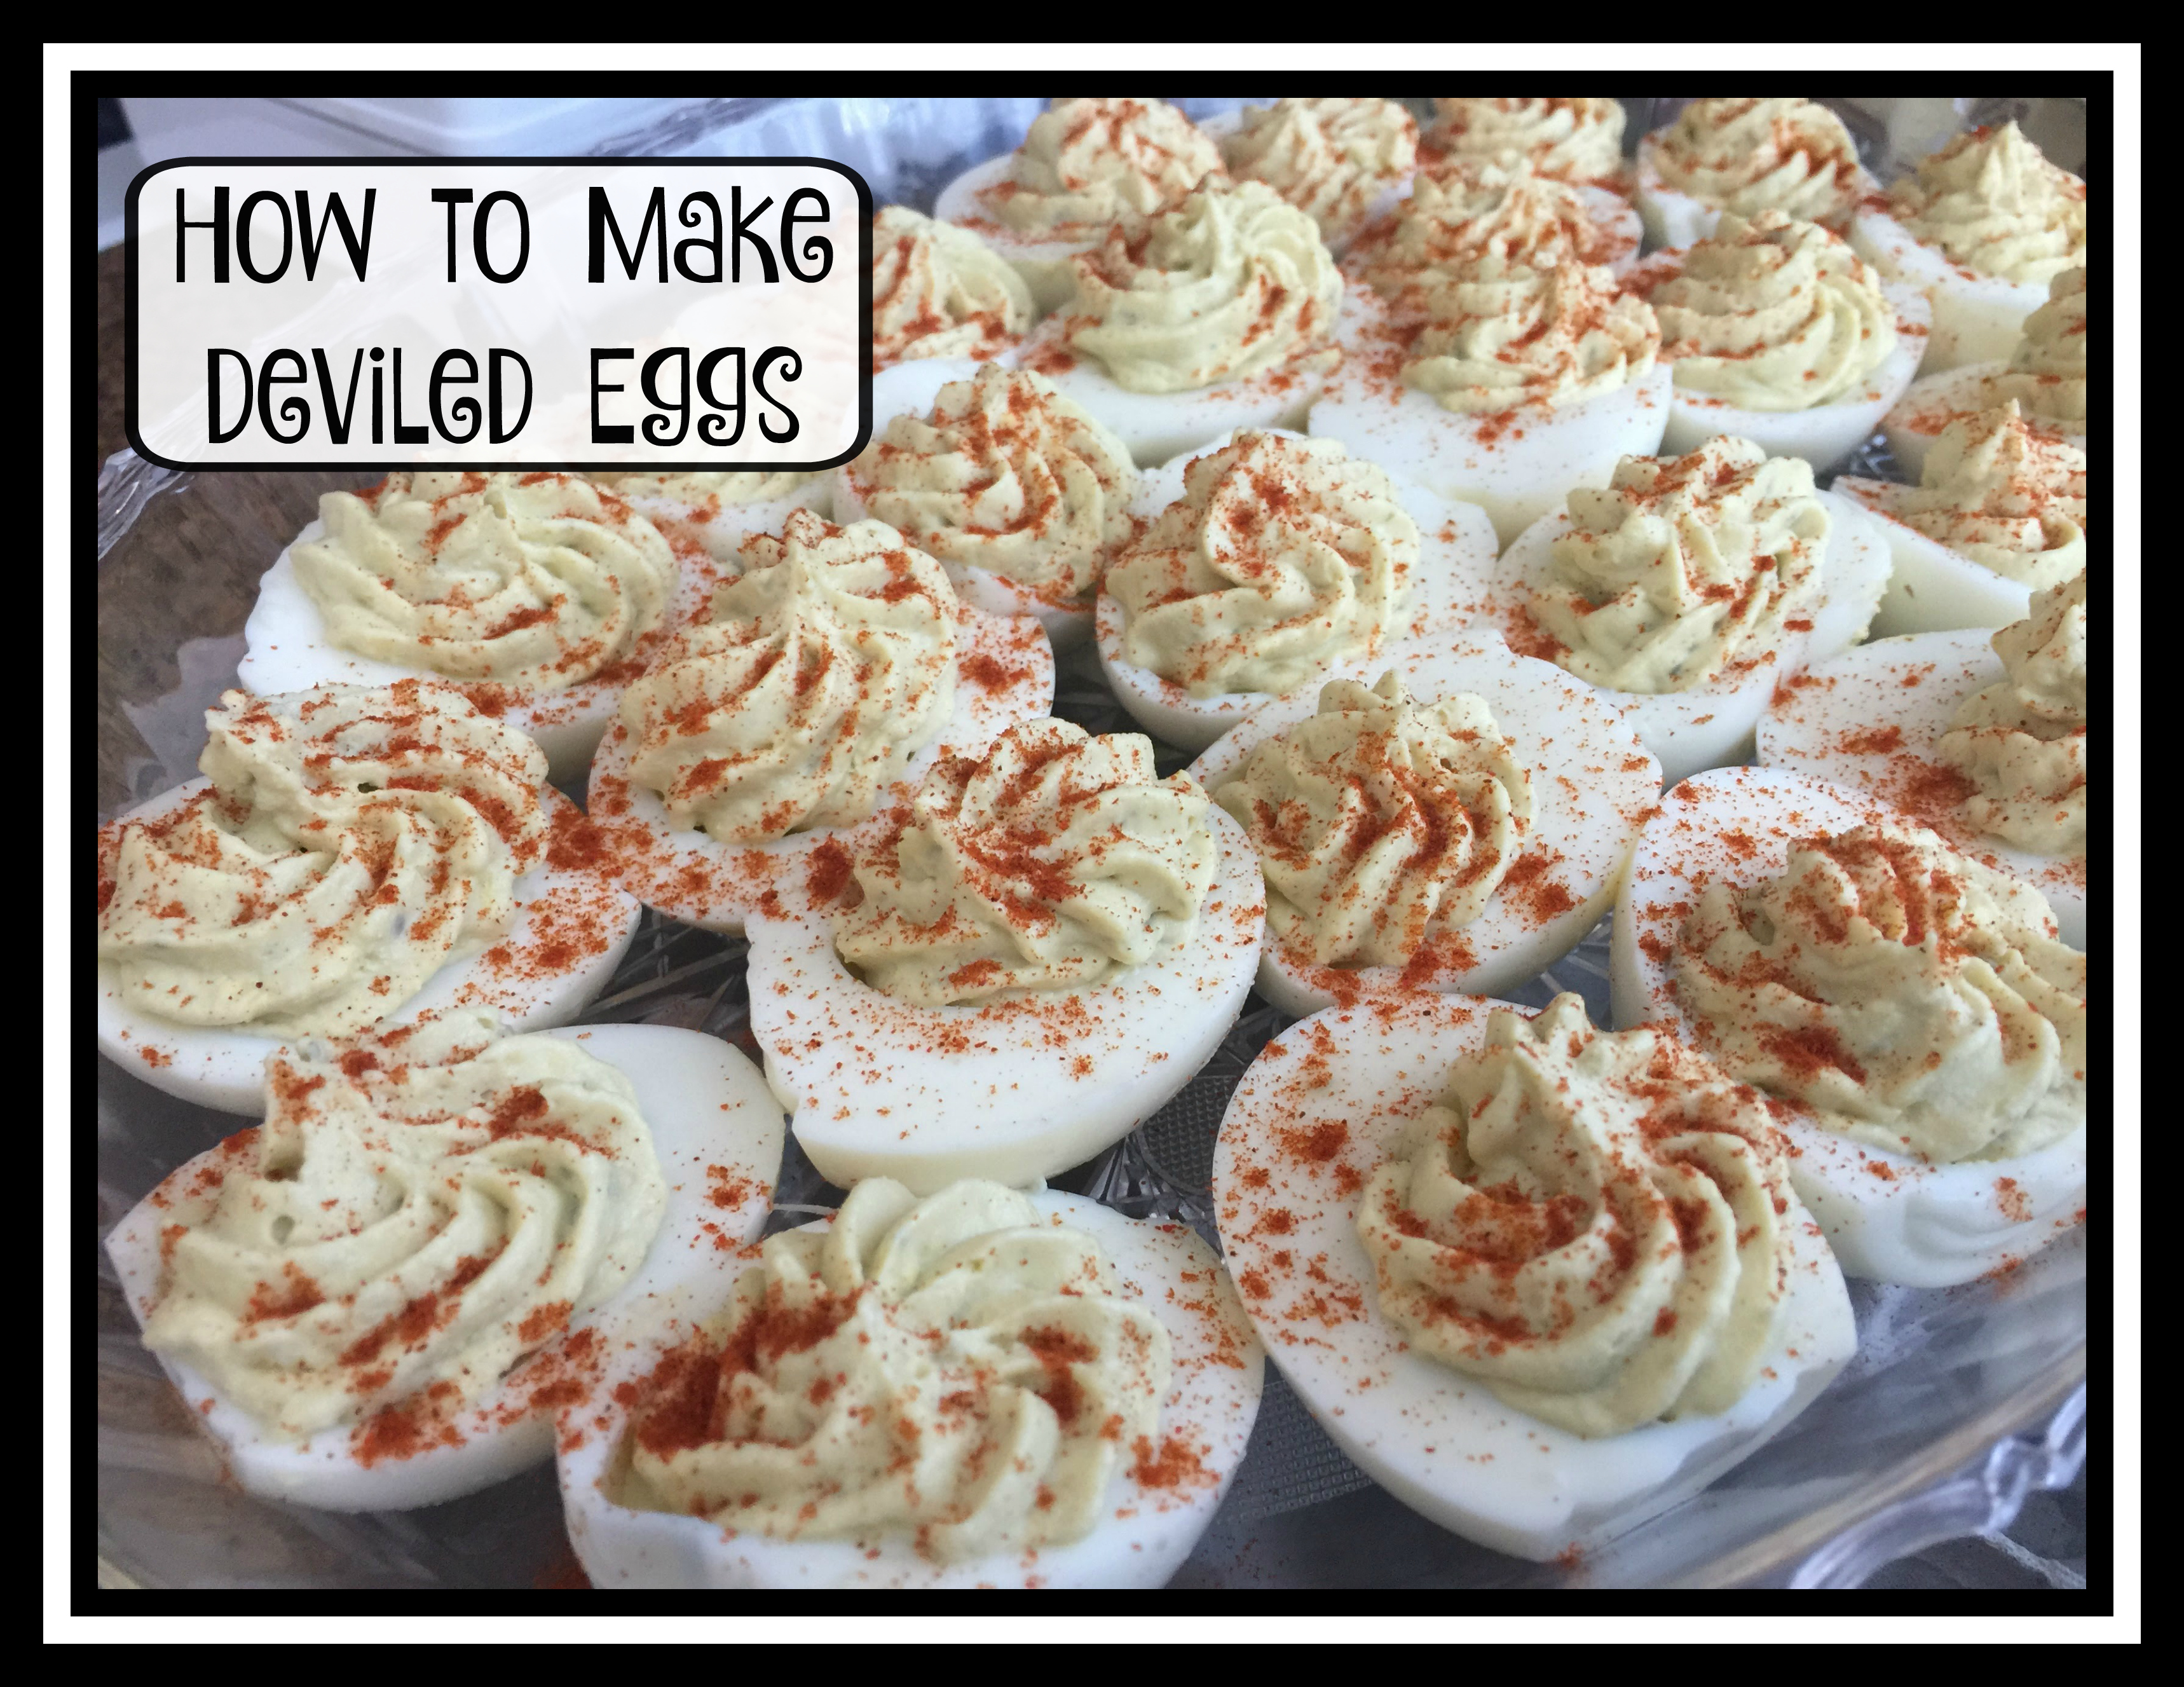 #Foodie #Recipe #DeviledEggs #Eggs #ad